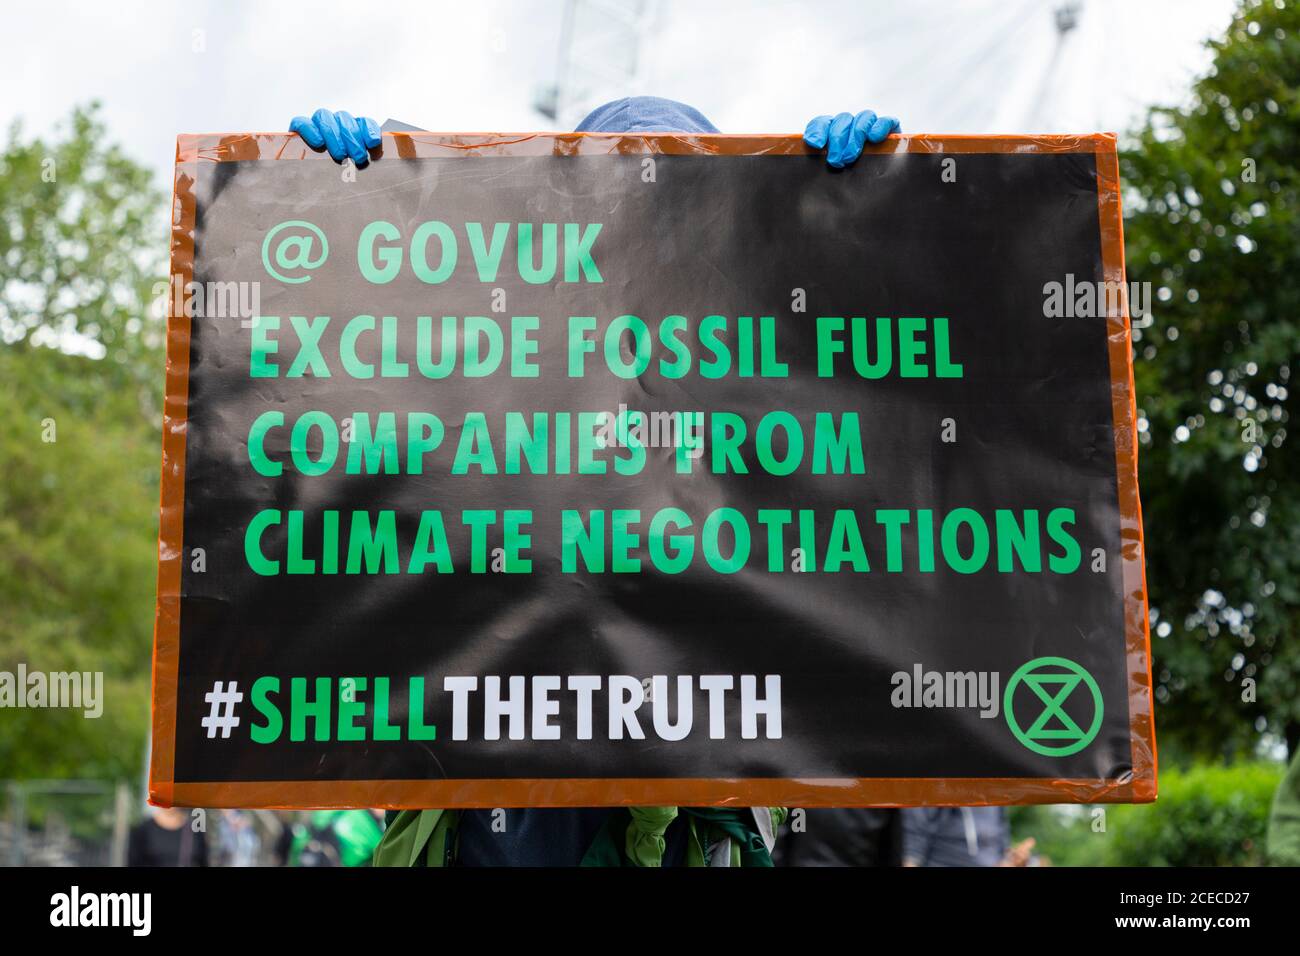 Manifestant tenant un panneau lors d'une manifestation de rébellion d'extinction devant le Shell Center, Jubilee Gardens, Londres, 28 août 2020 Banque D'Images